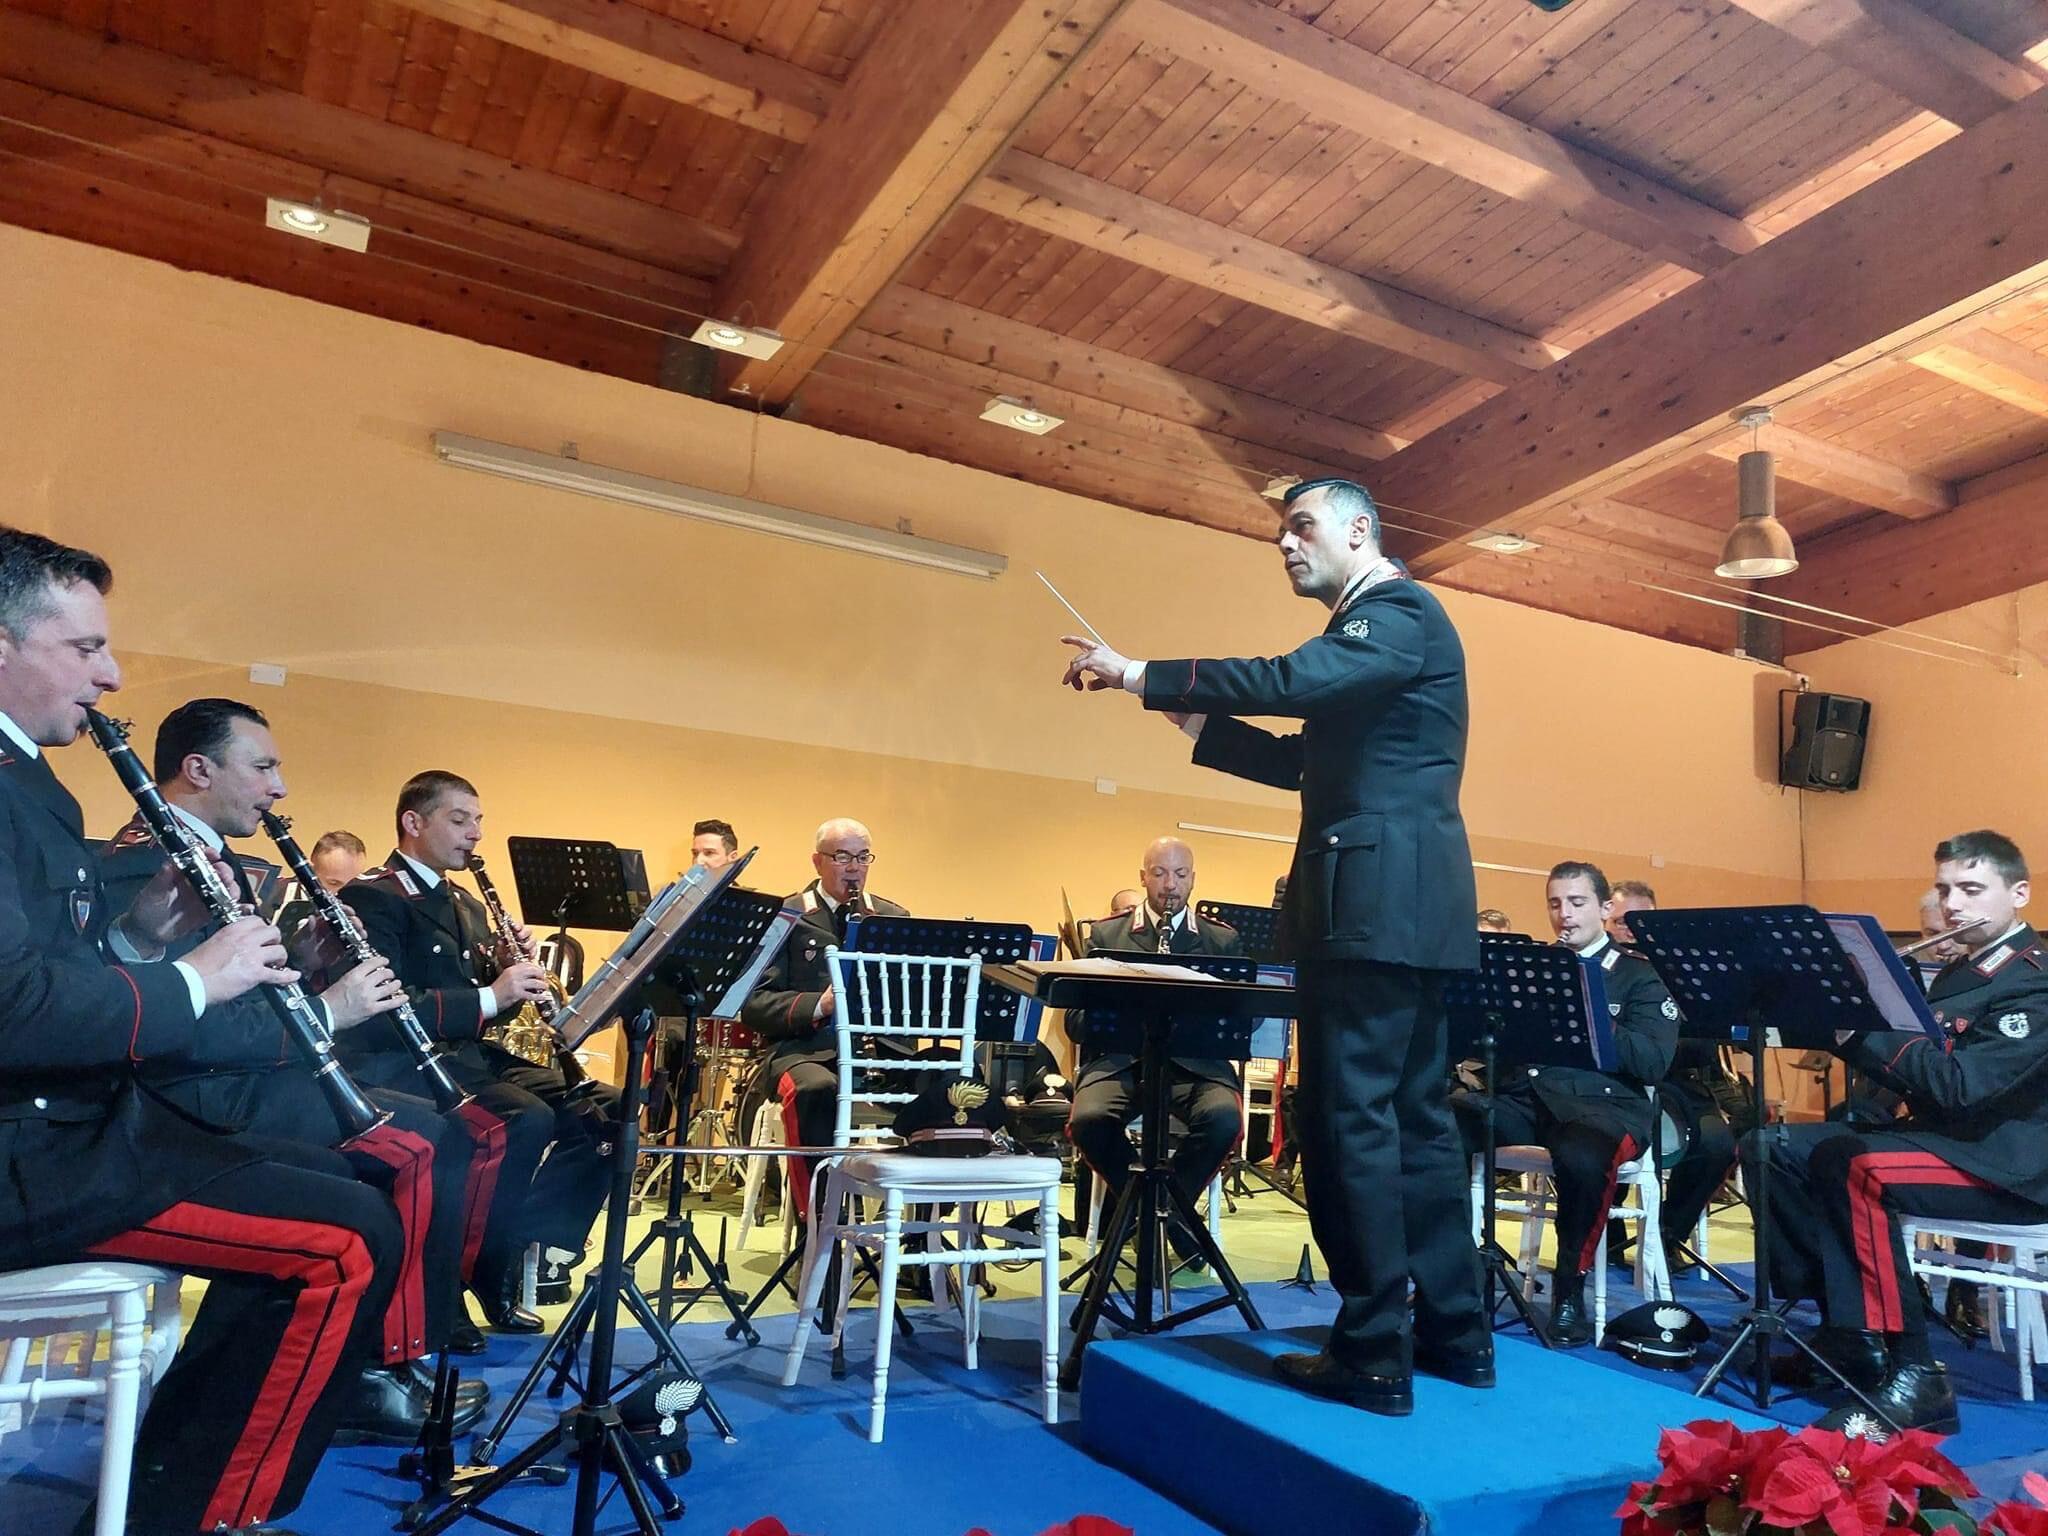 Concerto Fanfara Carabinieri